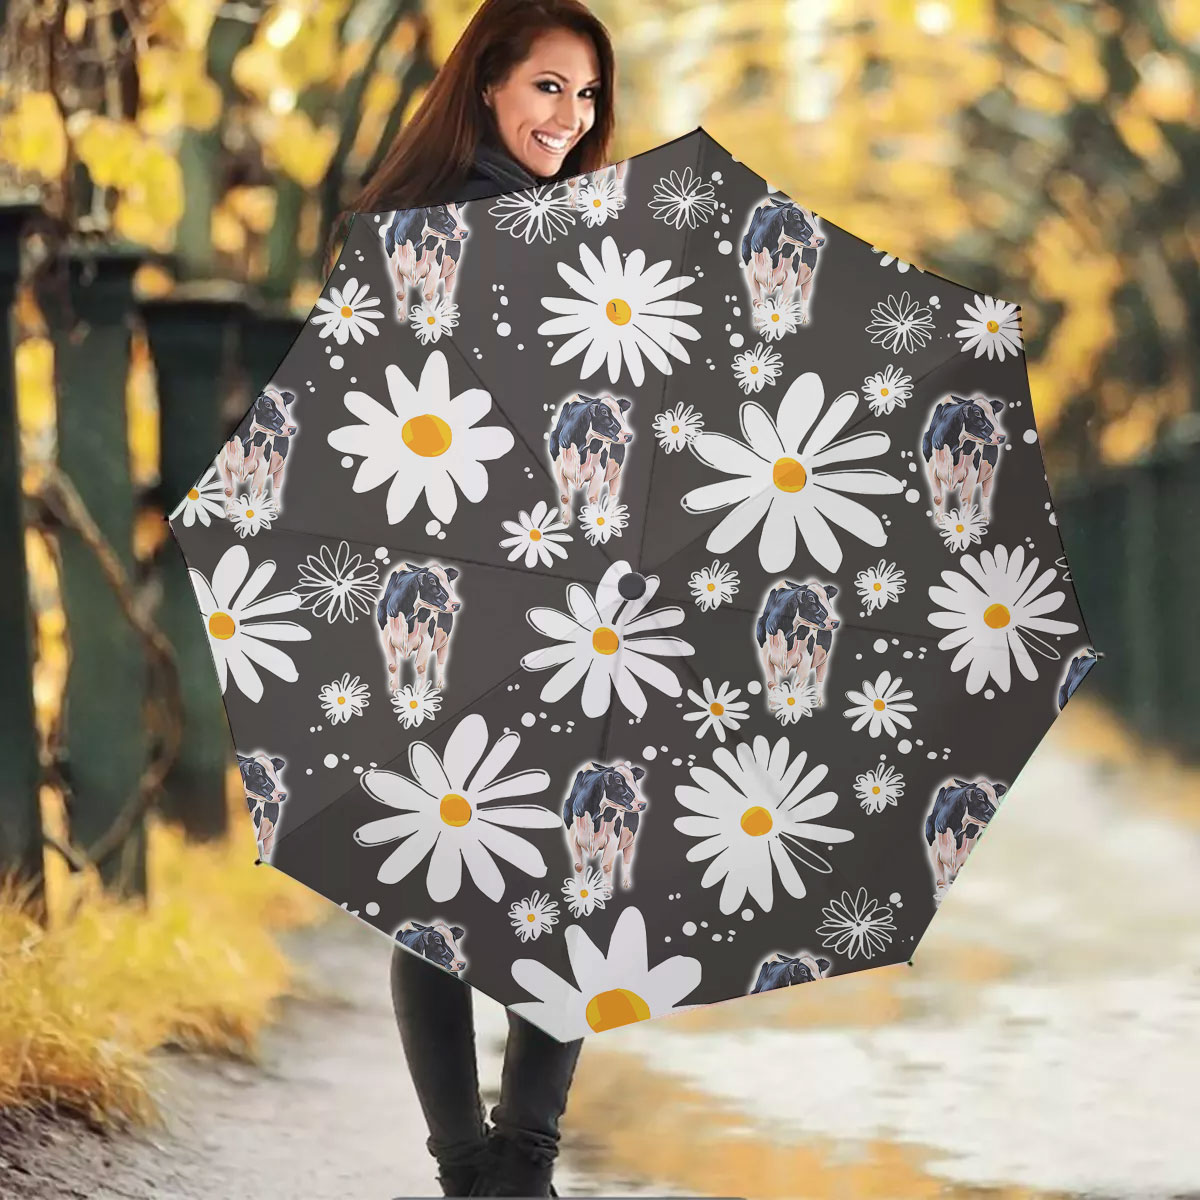 Holstein Daisy Flower Pattern Umbrella